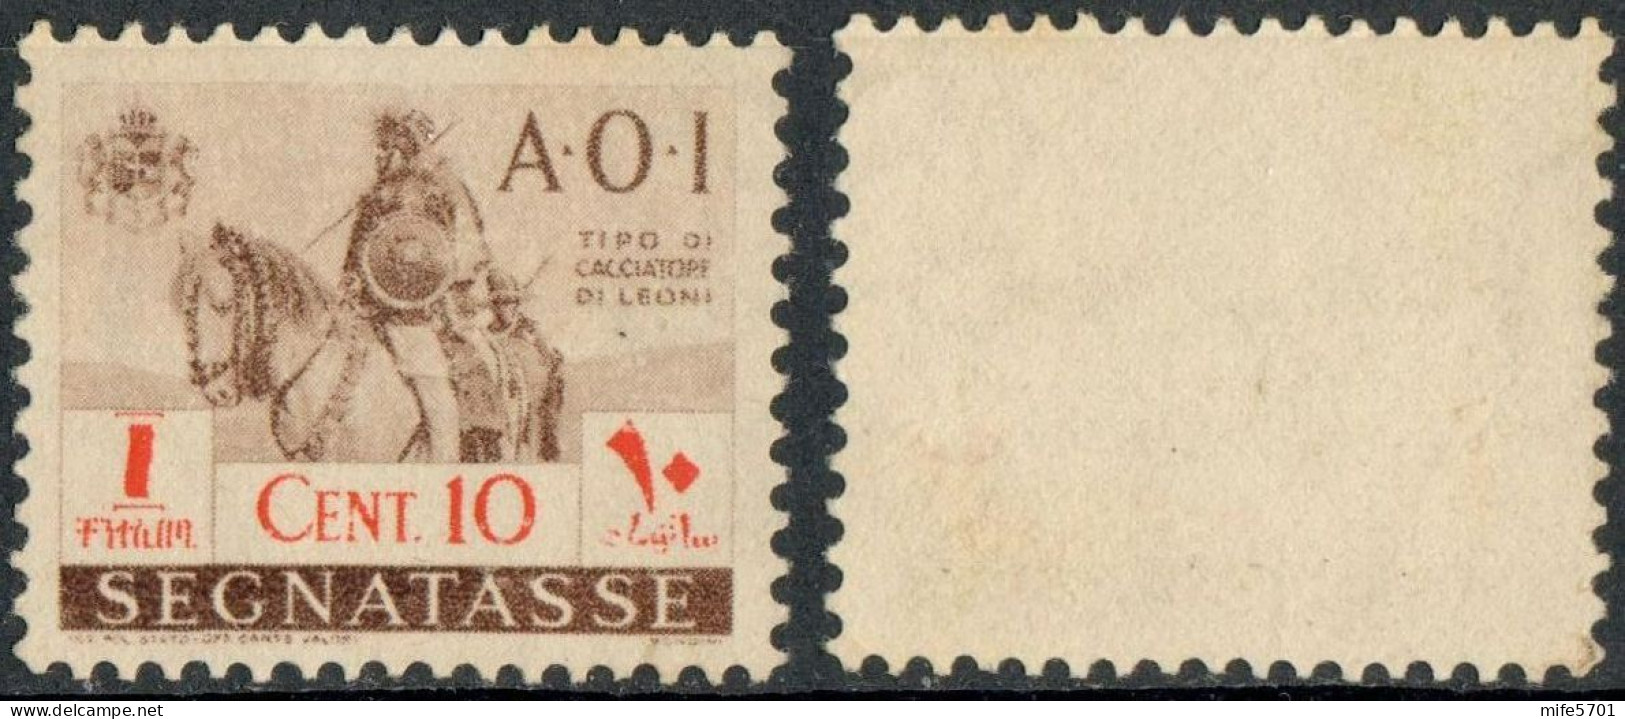 REGNO AFRICA ORIENTALE ITALIANA 1941 A.O.I. SEGNATASSE 'CACCIATORE DI LEONI A CAVALLO' C. 10 SENZA GOMMA (*) SASSONE 11 - Africa Oriental Italiana